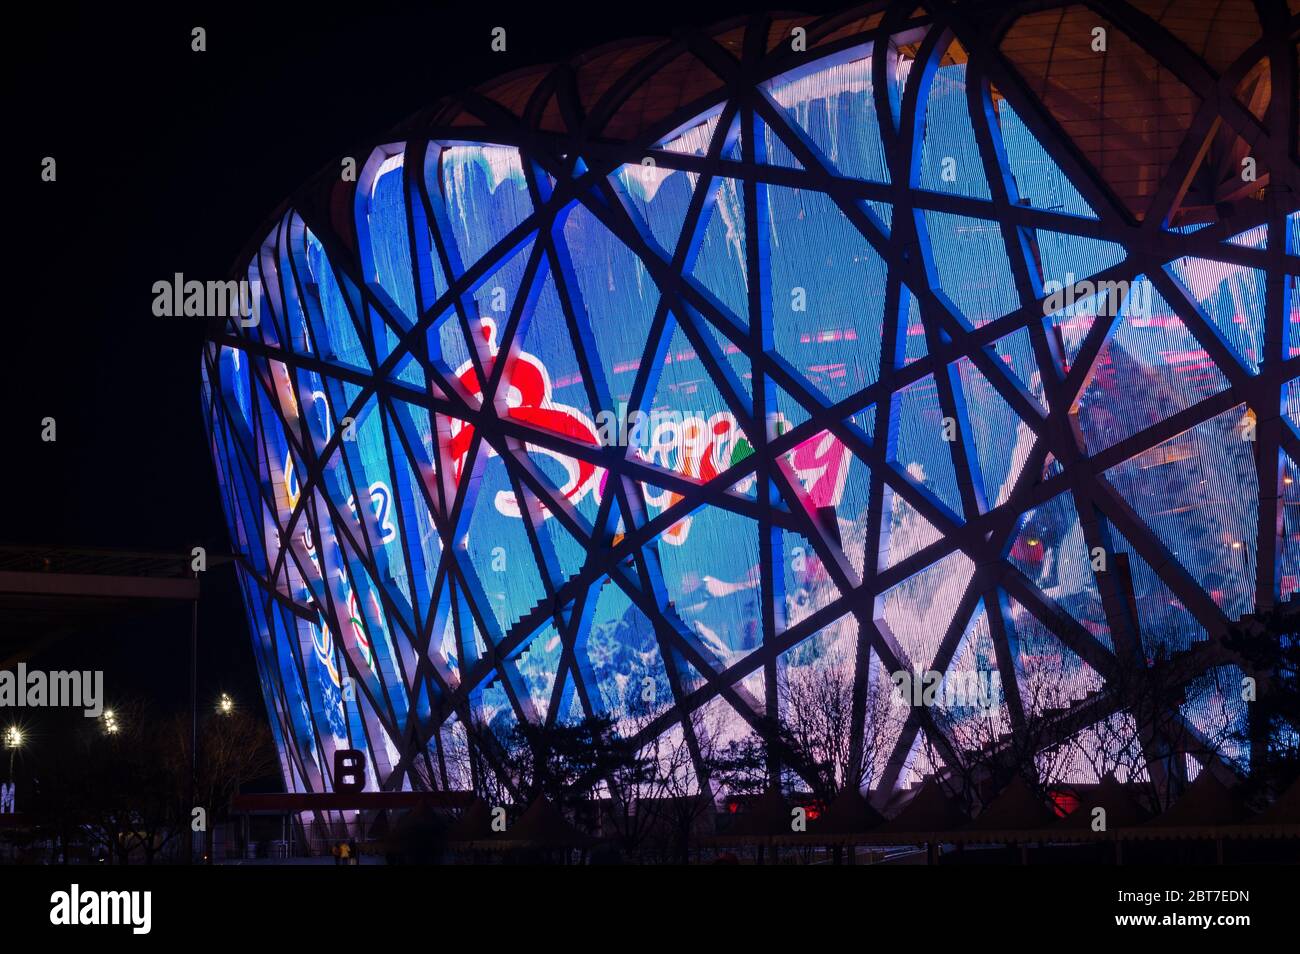 PECHINO / CINA - 7 febbraio 2015: Vista notturna dello Stadio Nazionale di Pechino (Nido degli Uccelli), sede delle Olimpiadi estive del 2008, situato presso l'Olympic Green i. Foto Stock